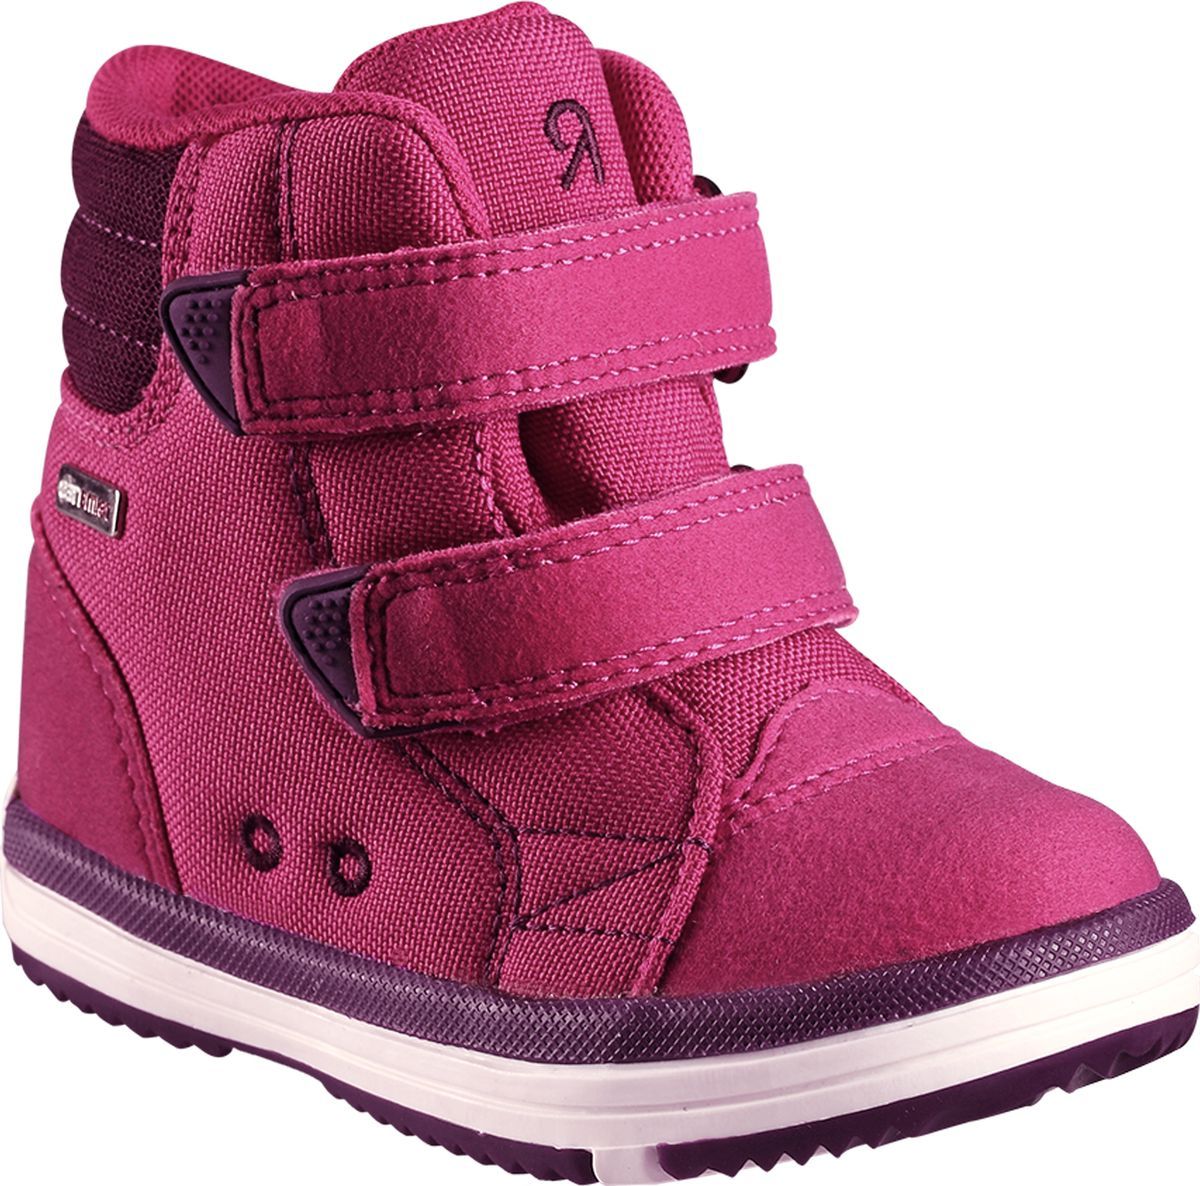 Ботинки детские Reima Patter, цвет: розовый. 5693443600. Размер 21